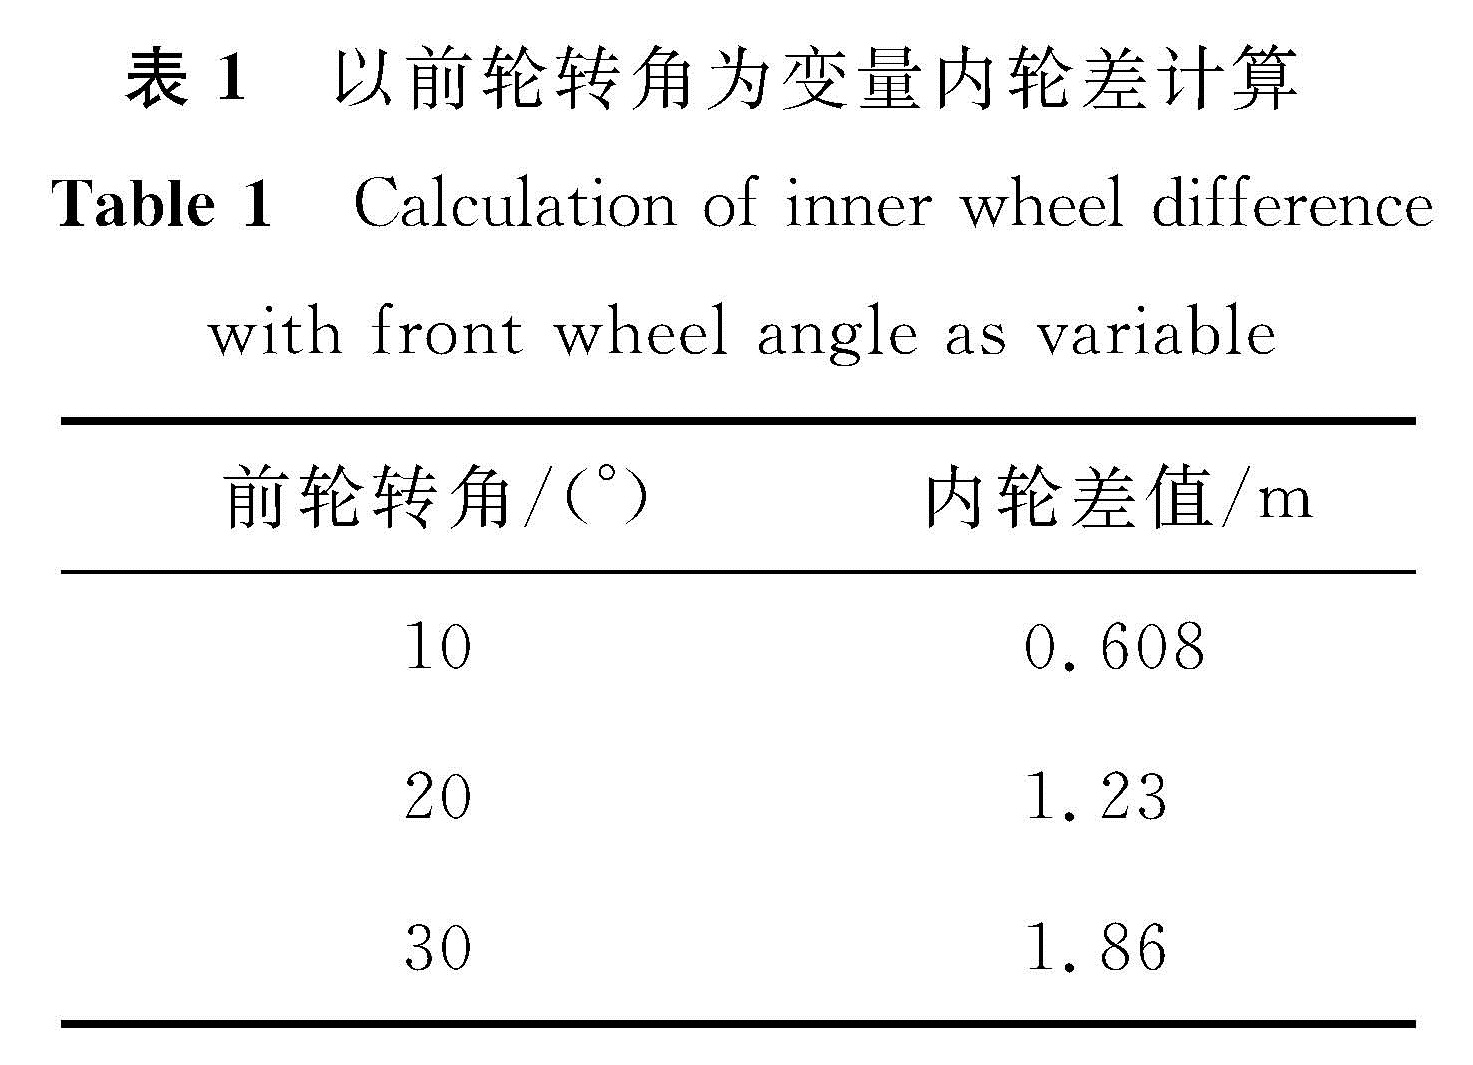 表1 以前轮转角为变量内轮差计算 <br/>Table 1 Calculation of inner wheel difference with front wheel angle as variable